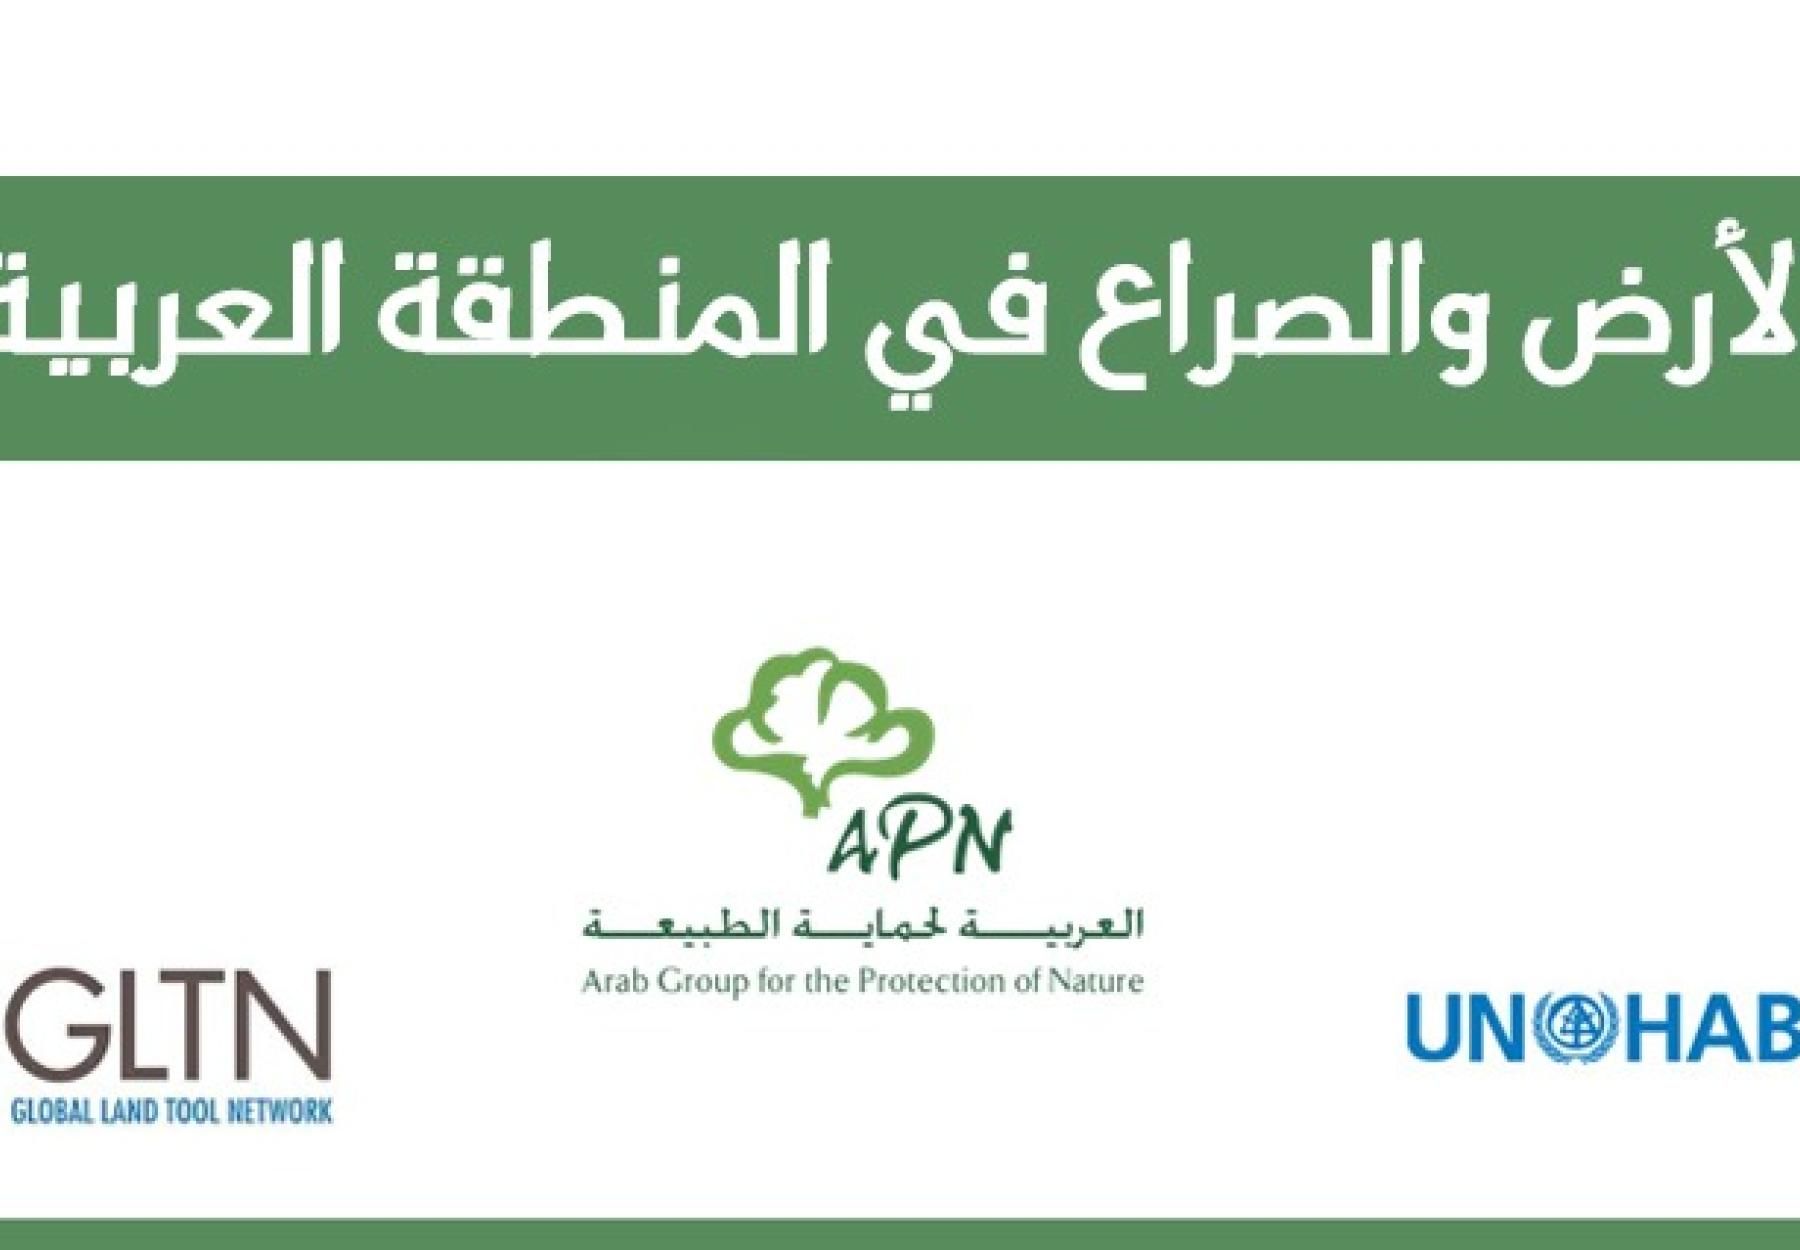 اركت الجمعية العربية لحماية الطبيعة كمتحدث في الاجتماع الذي عقدته المجموعة المرجعية لمبادرة الأراضي العربية،